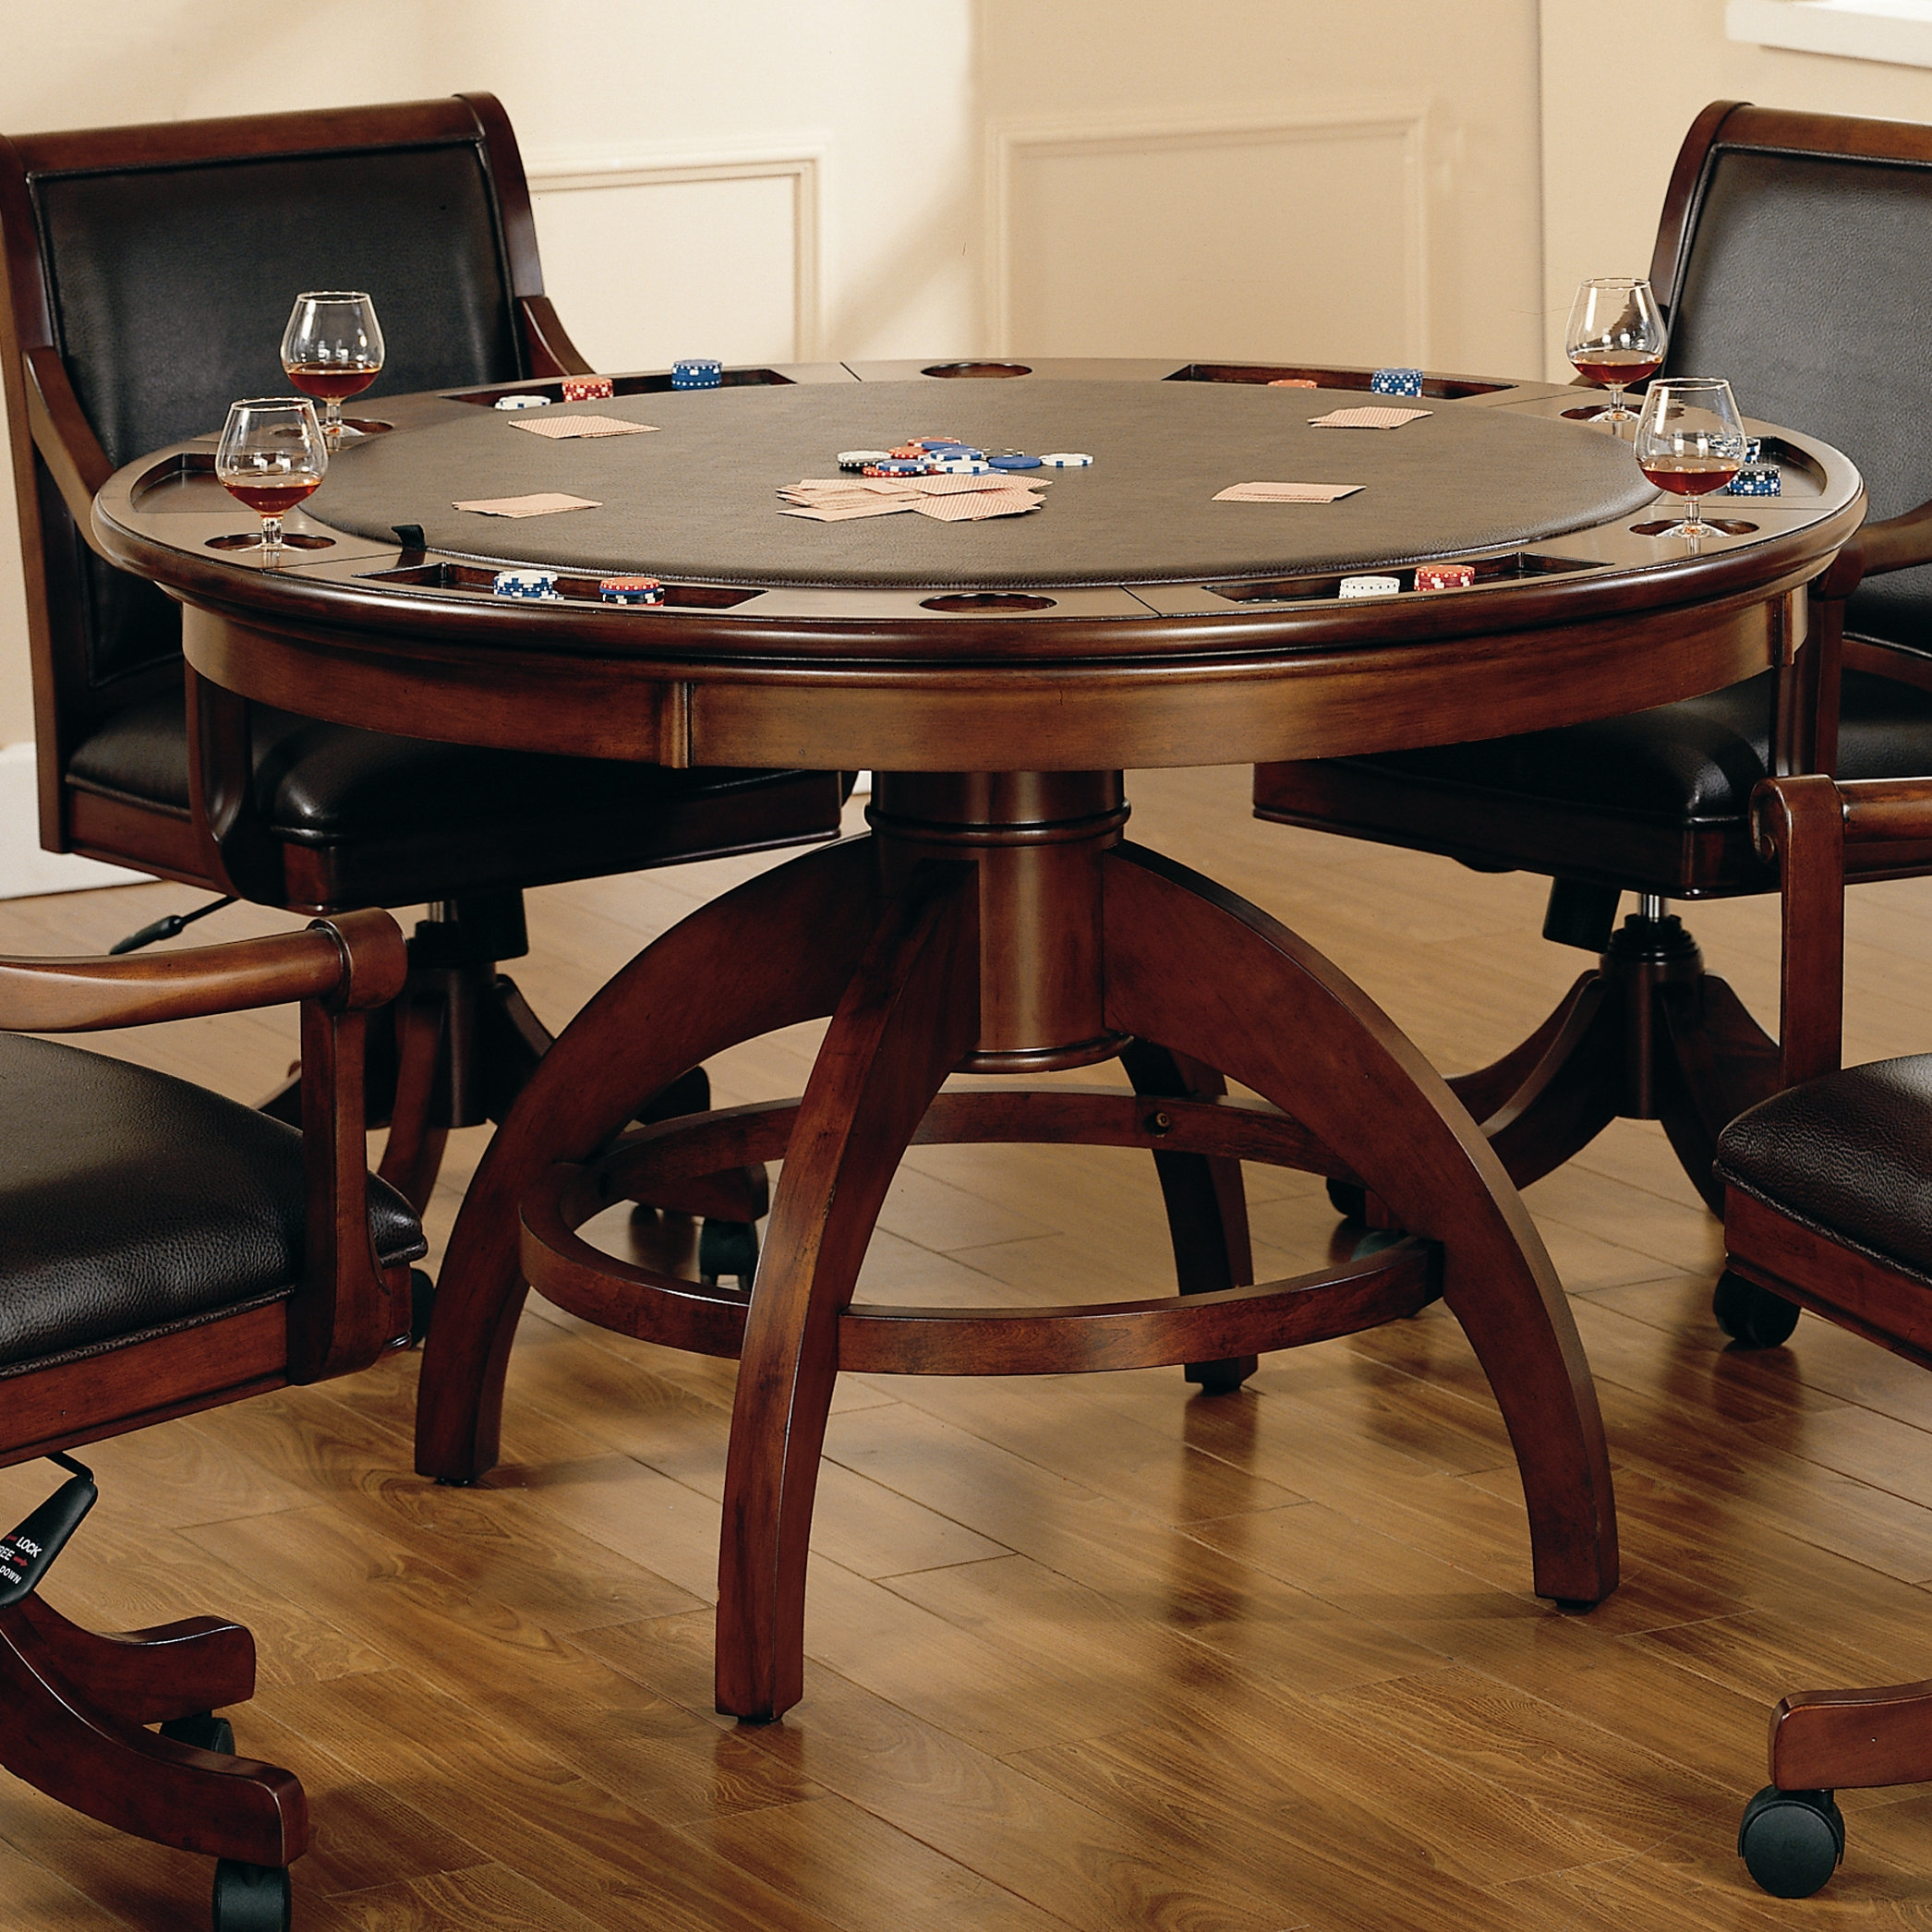 Карточный столик. Ломберный покерный стол. Круглый стол о казино. Круглый покерный стол. Стол игровой круглый.